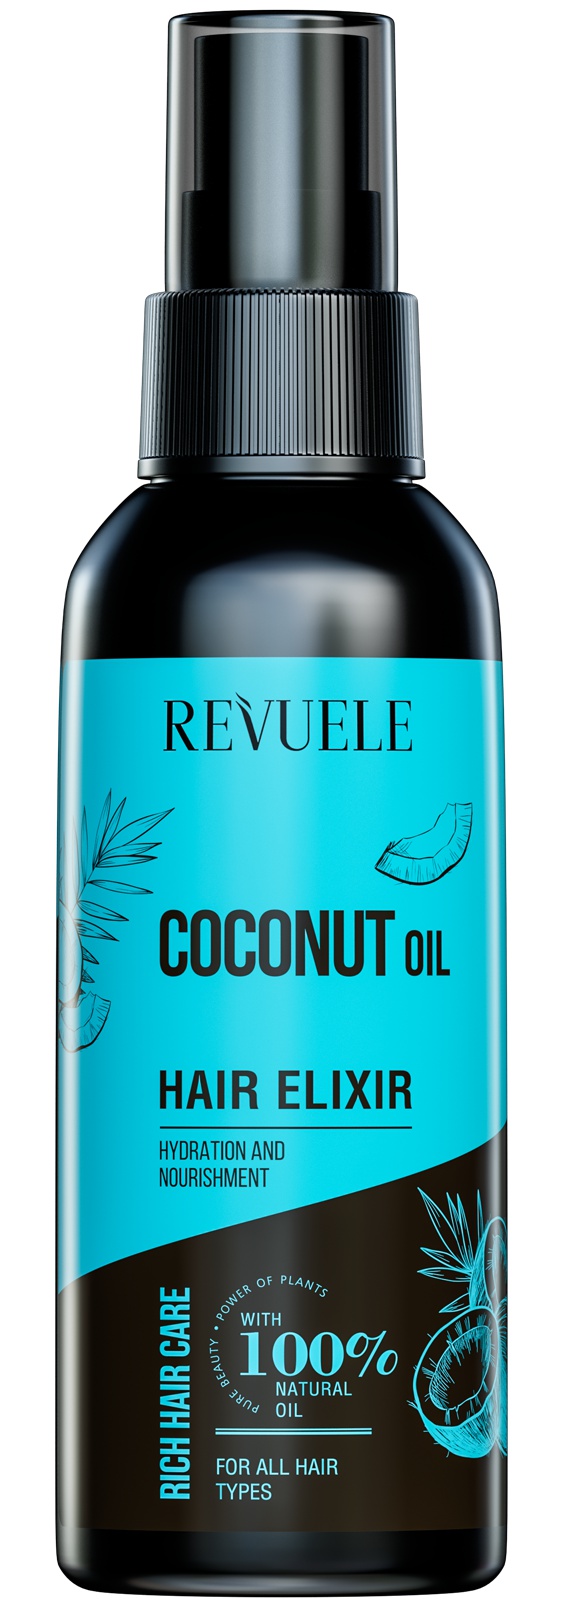 Revuele Coconut Oil Hair Elixir